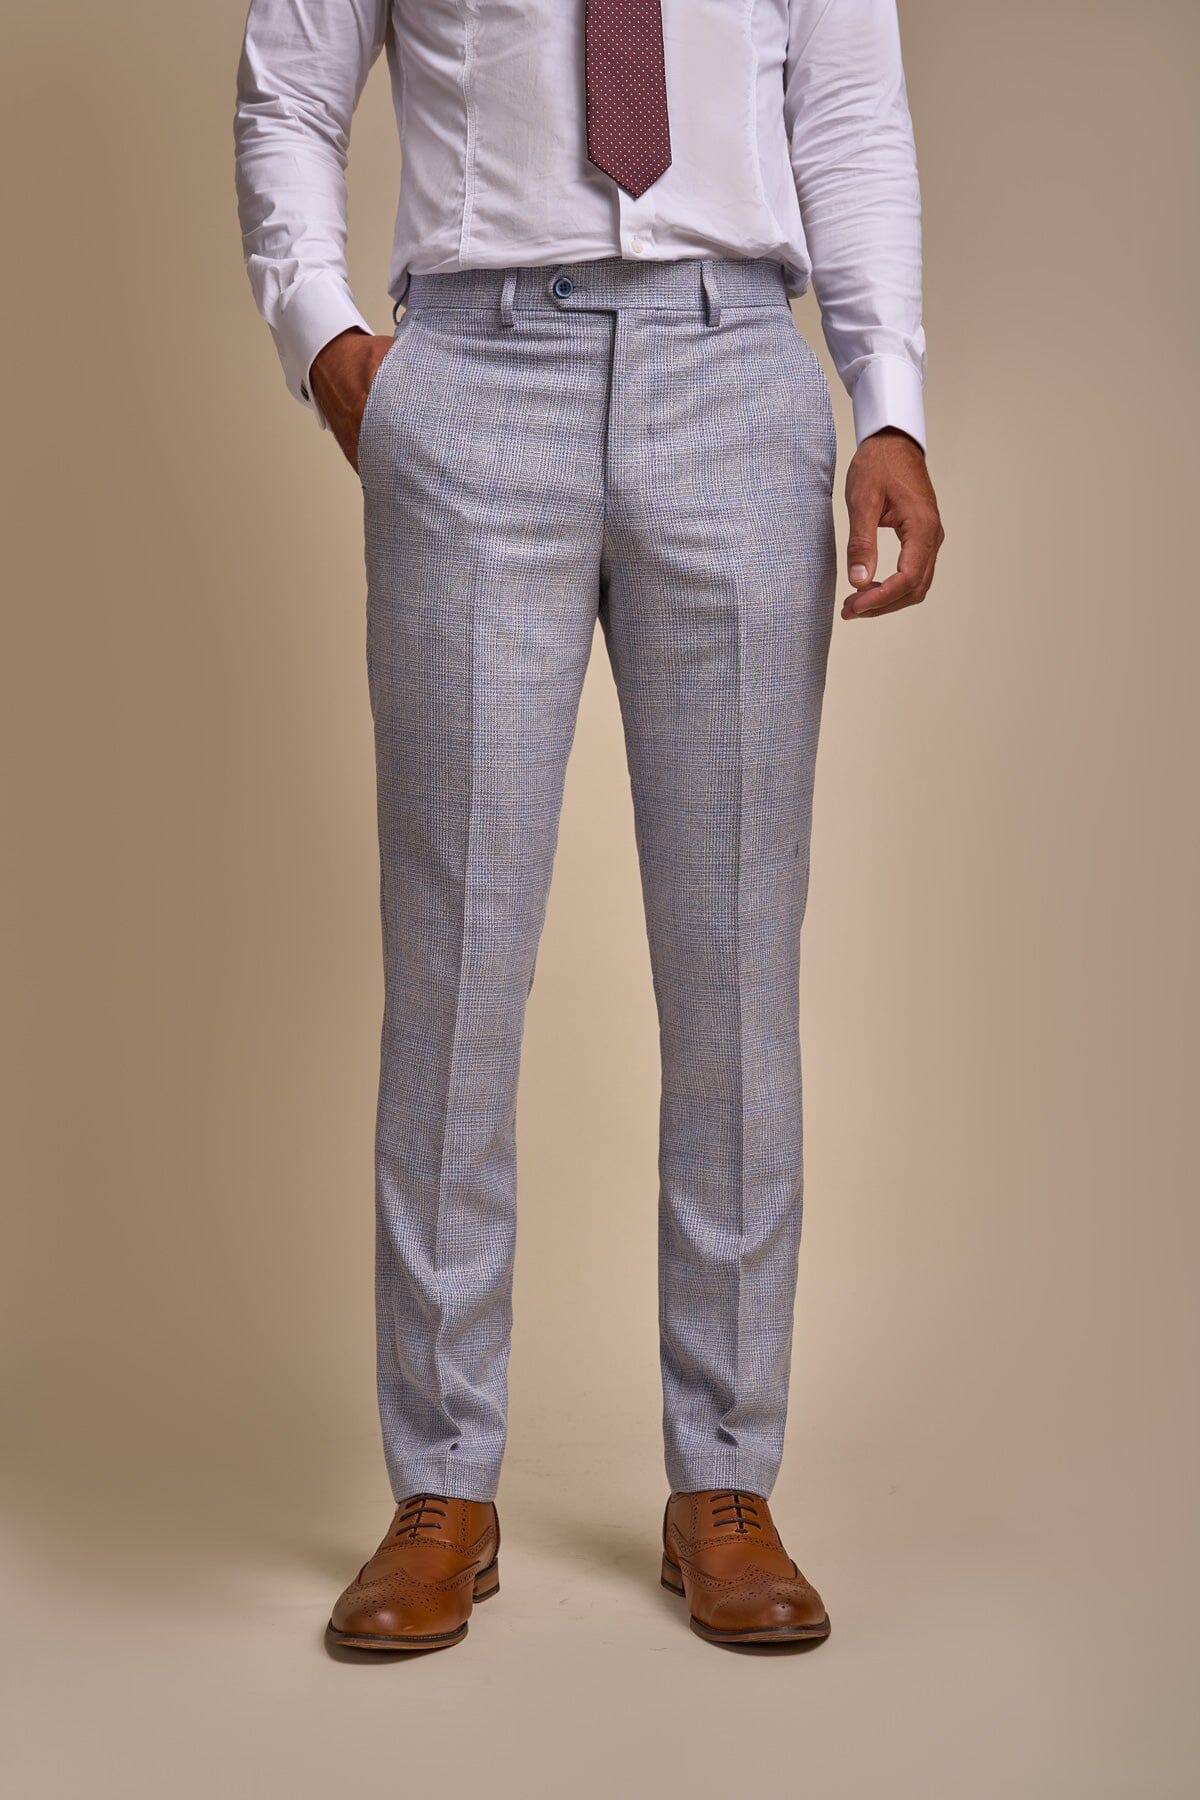 Caridi Sky Blue 3 Piece Wedding Suit - Suits - 